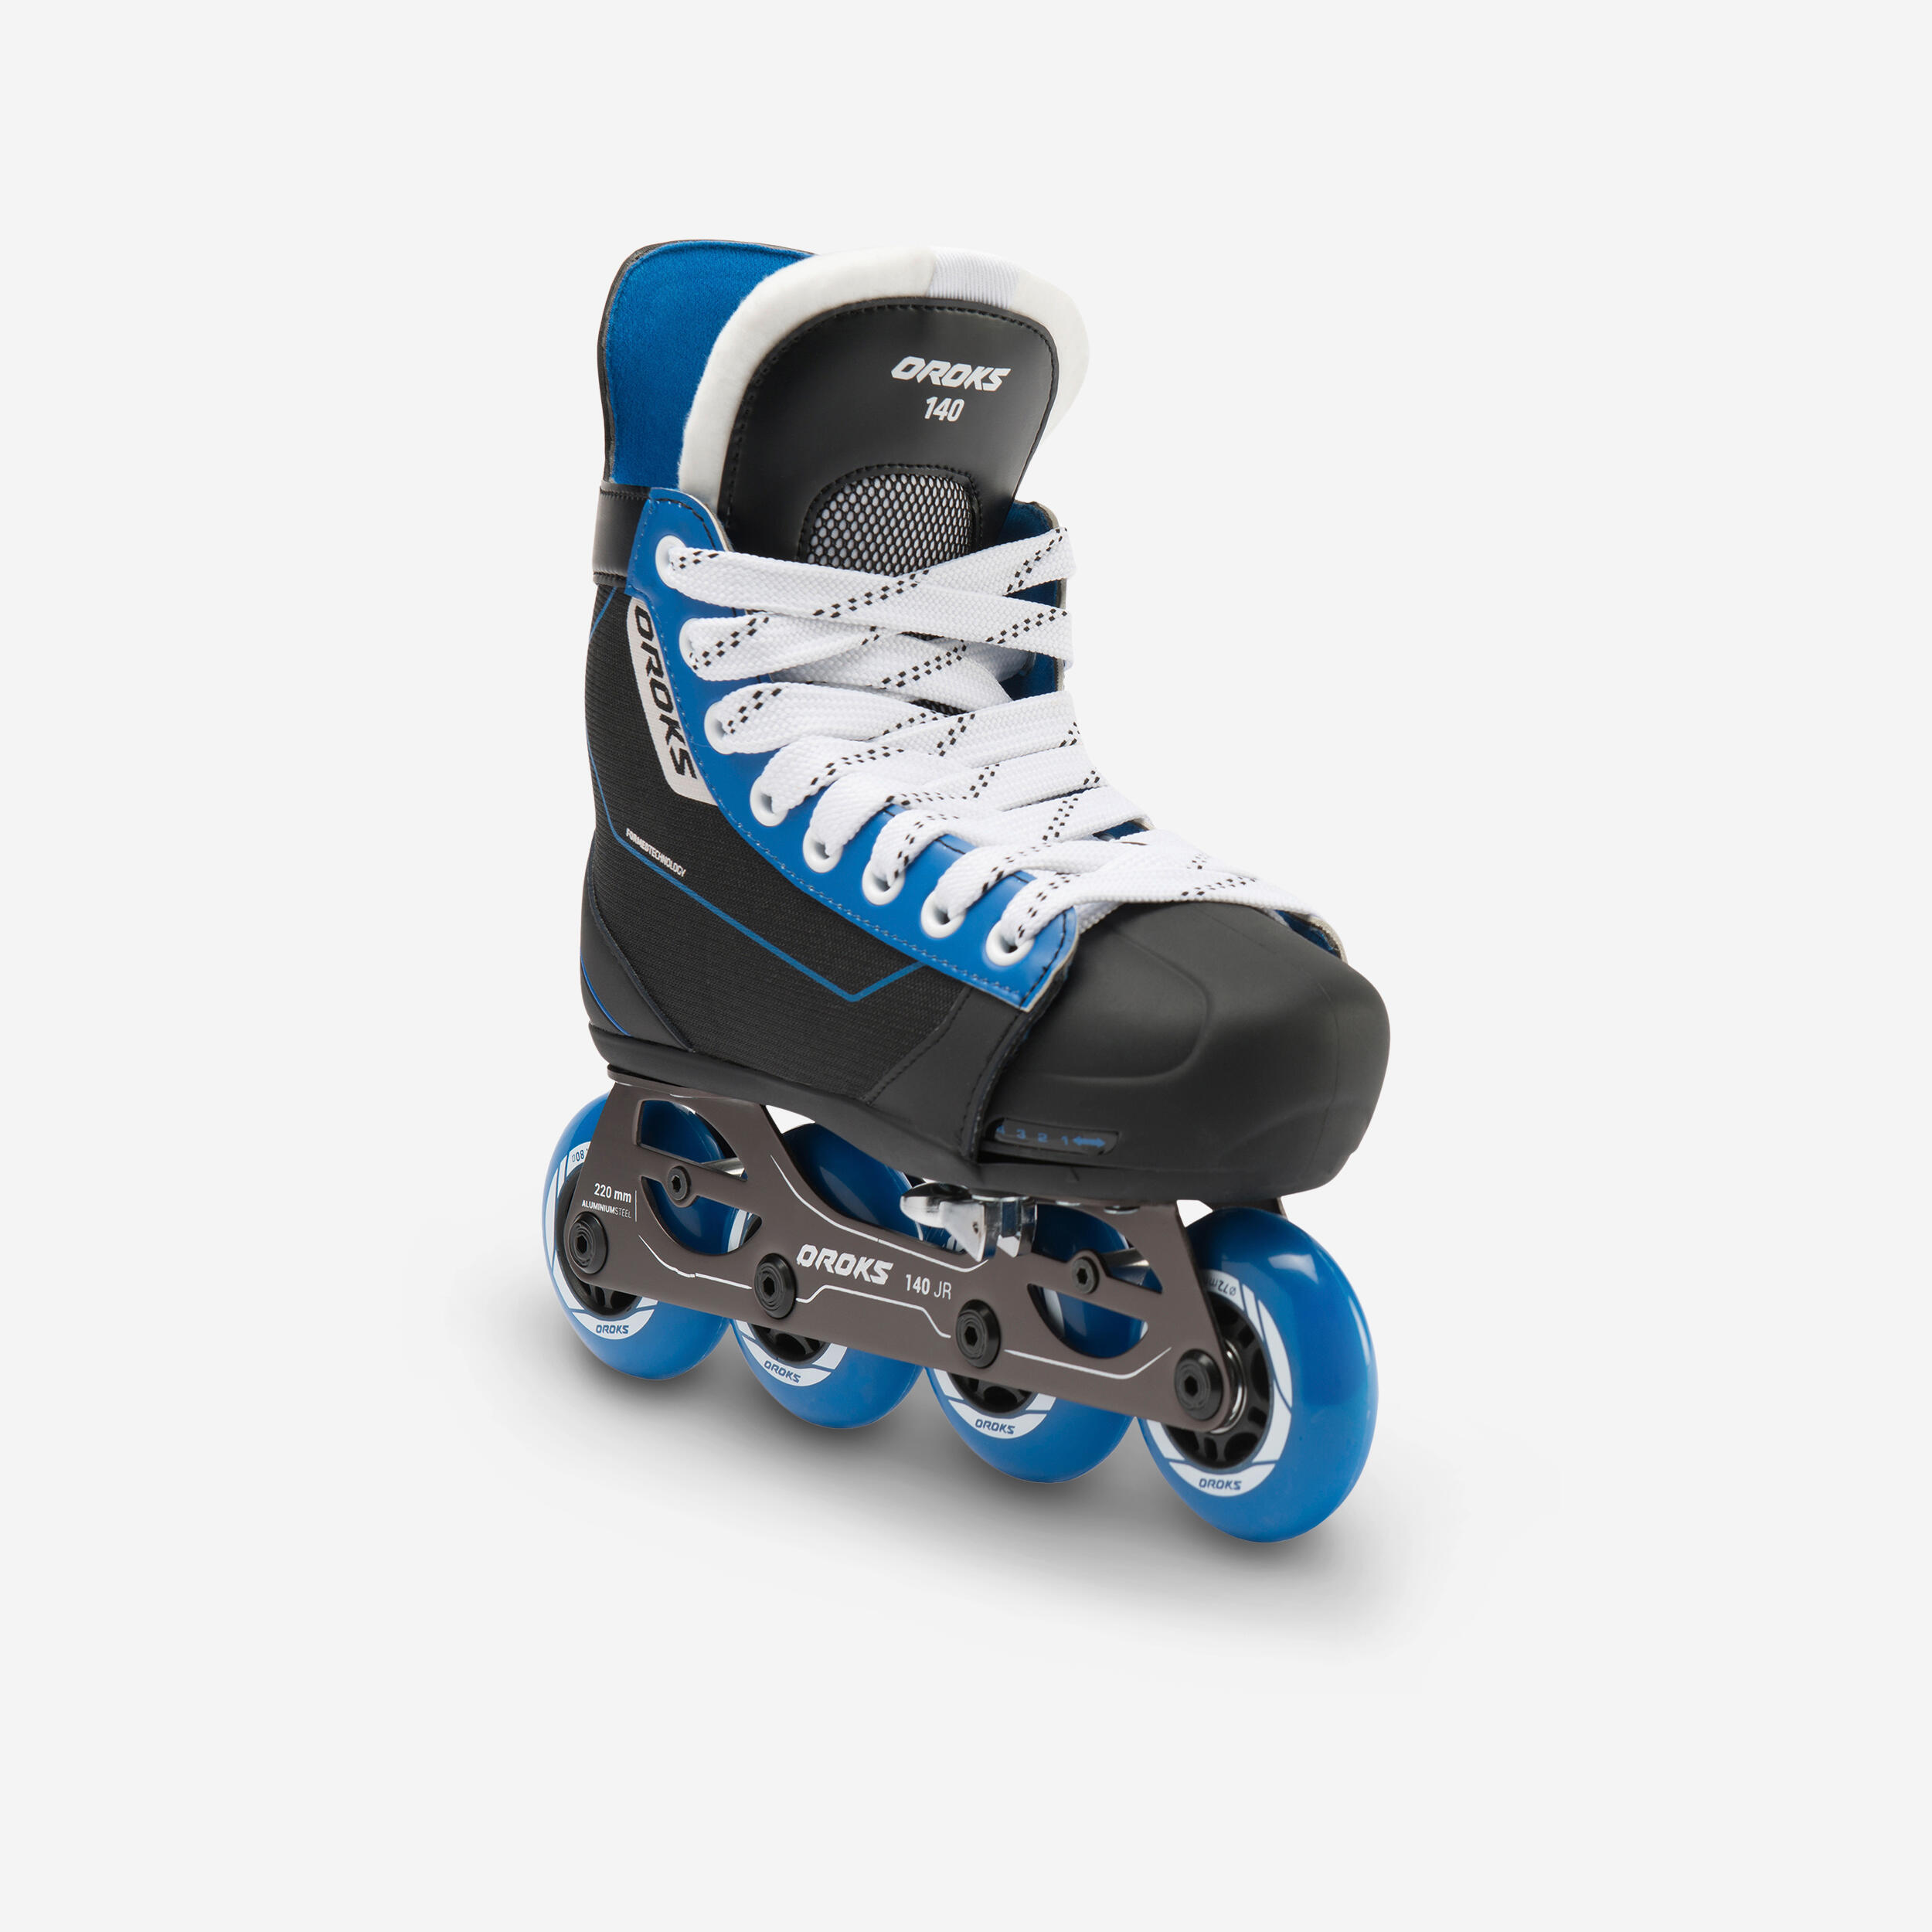 Oroks Hockey Skates Ilh 140 Jr